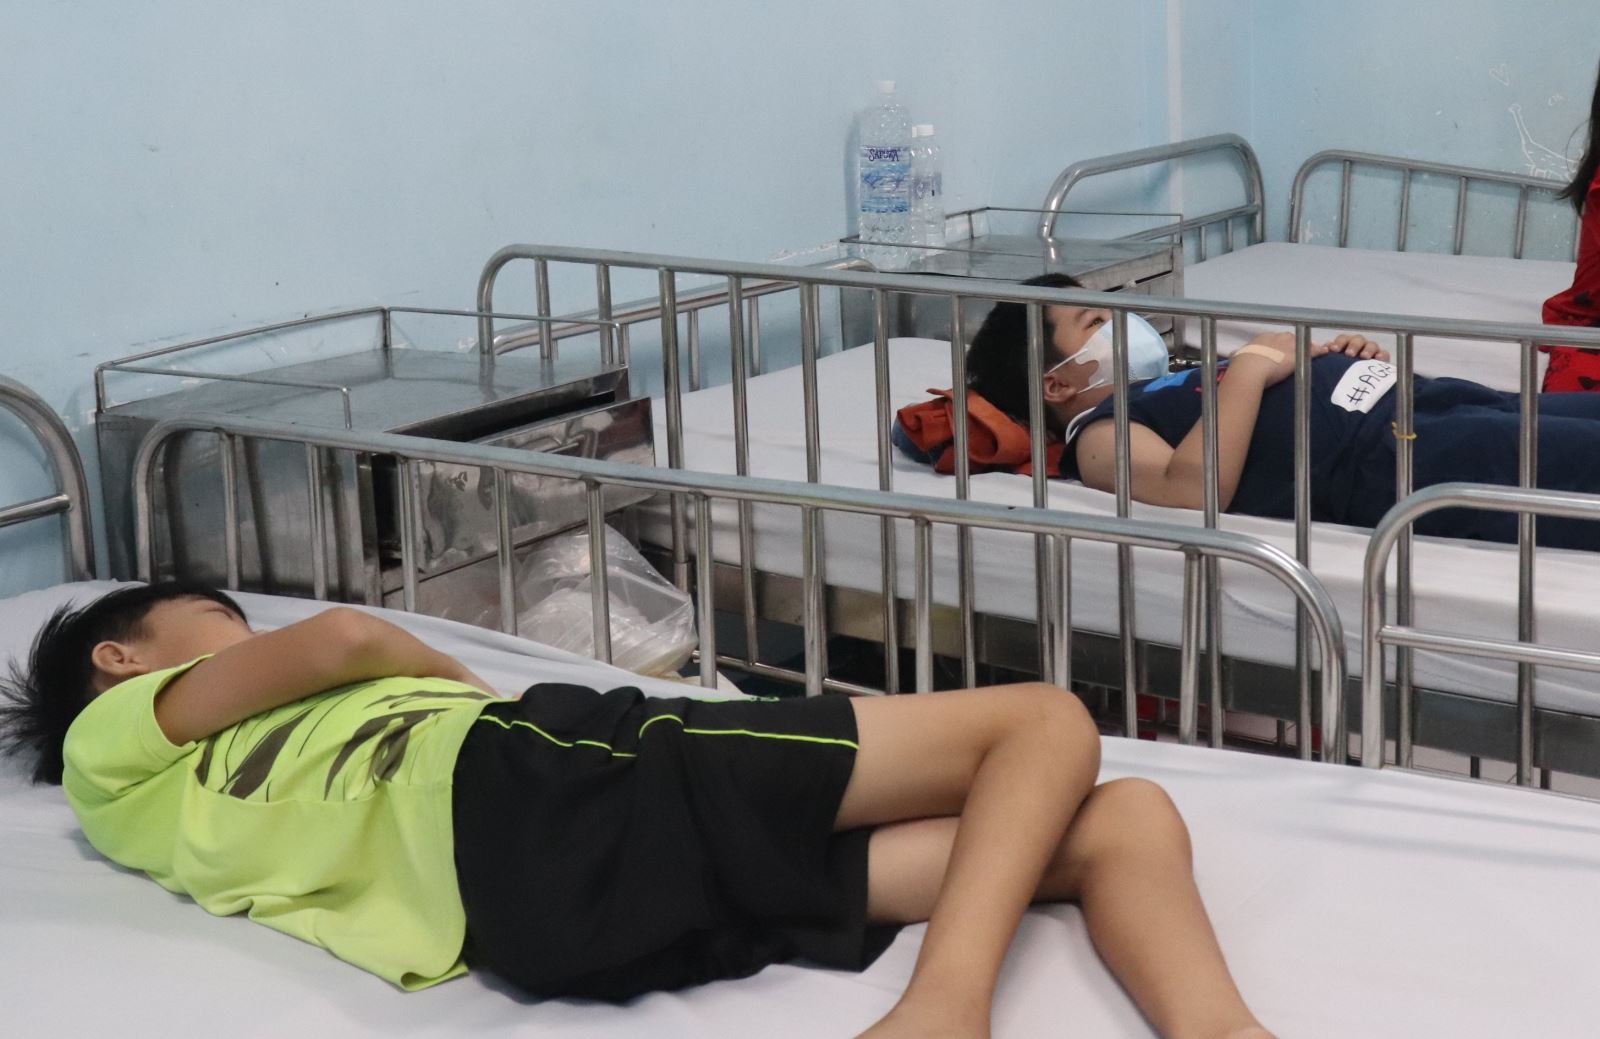 TP Hồ Chí Minh vượt mốc 10.000 ca mắc sốt xuất huyết, nhiều trường hợp nhập viện đã suy đa tạng - Ảnh 1.